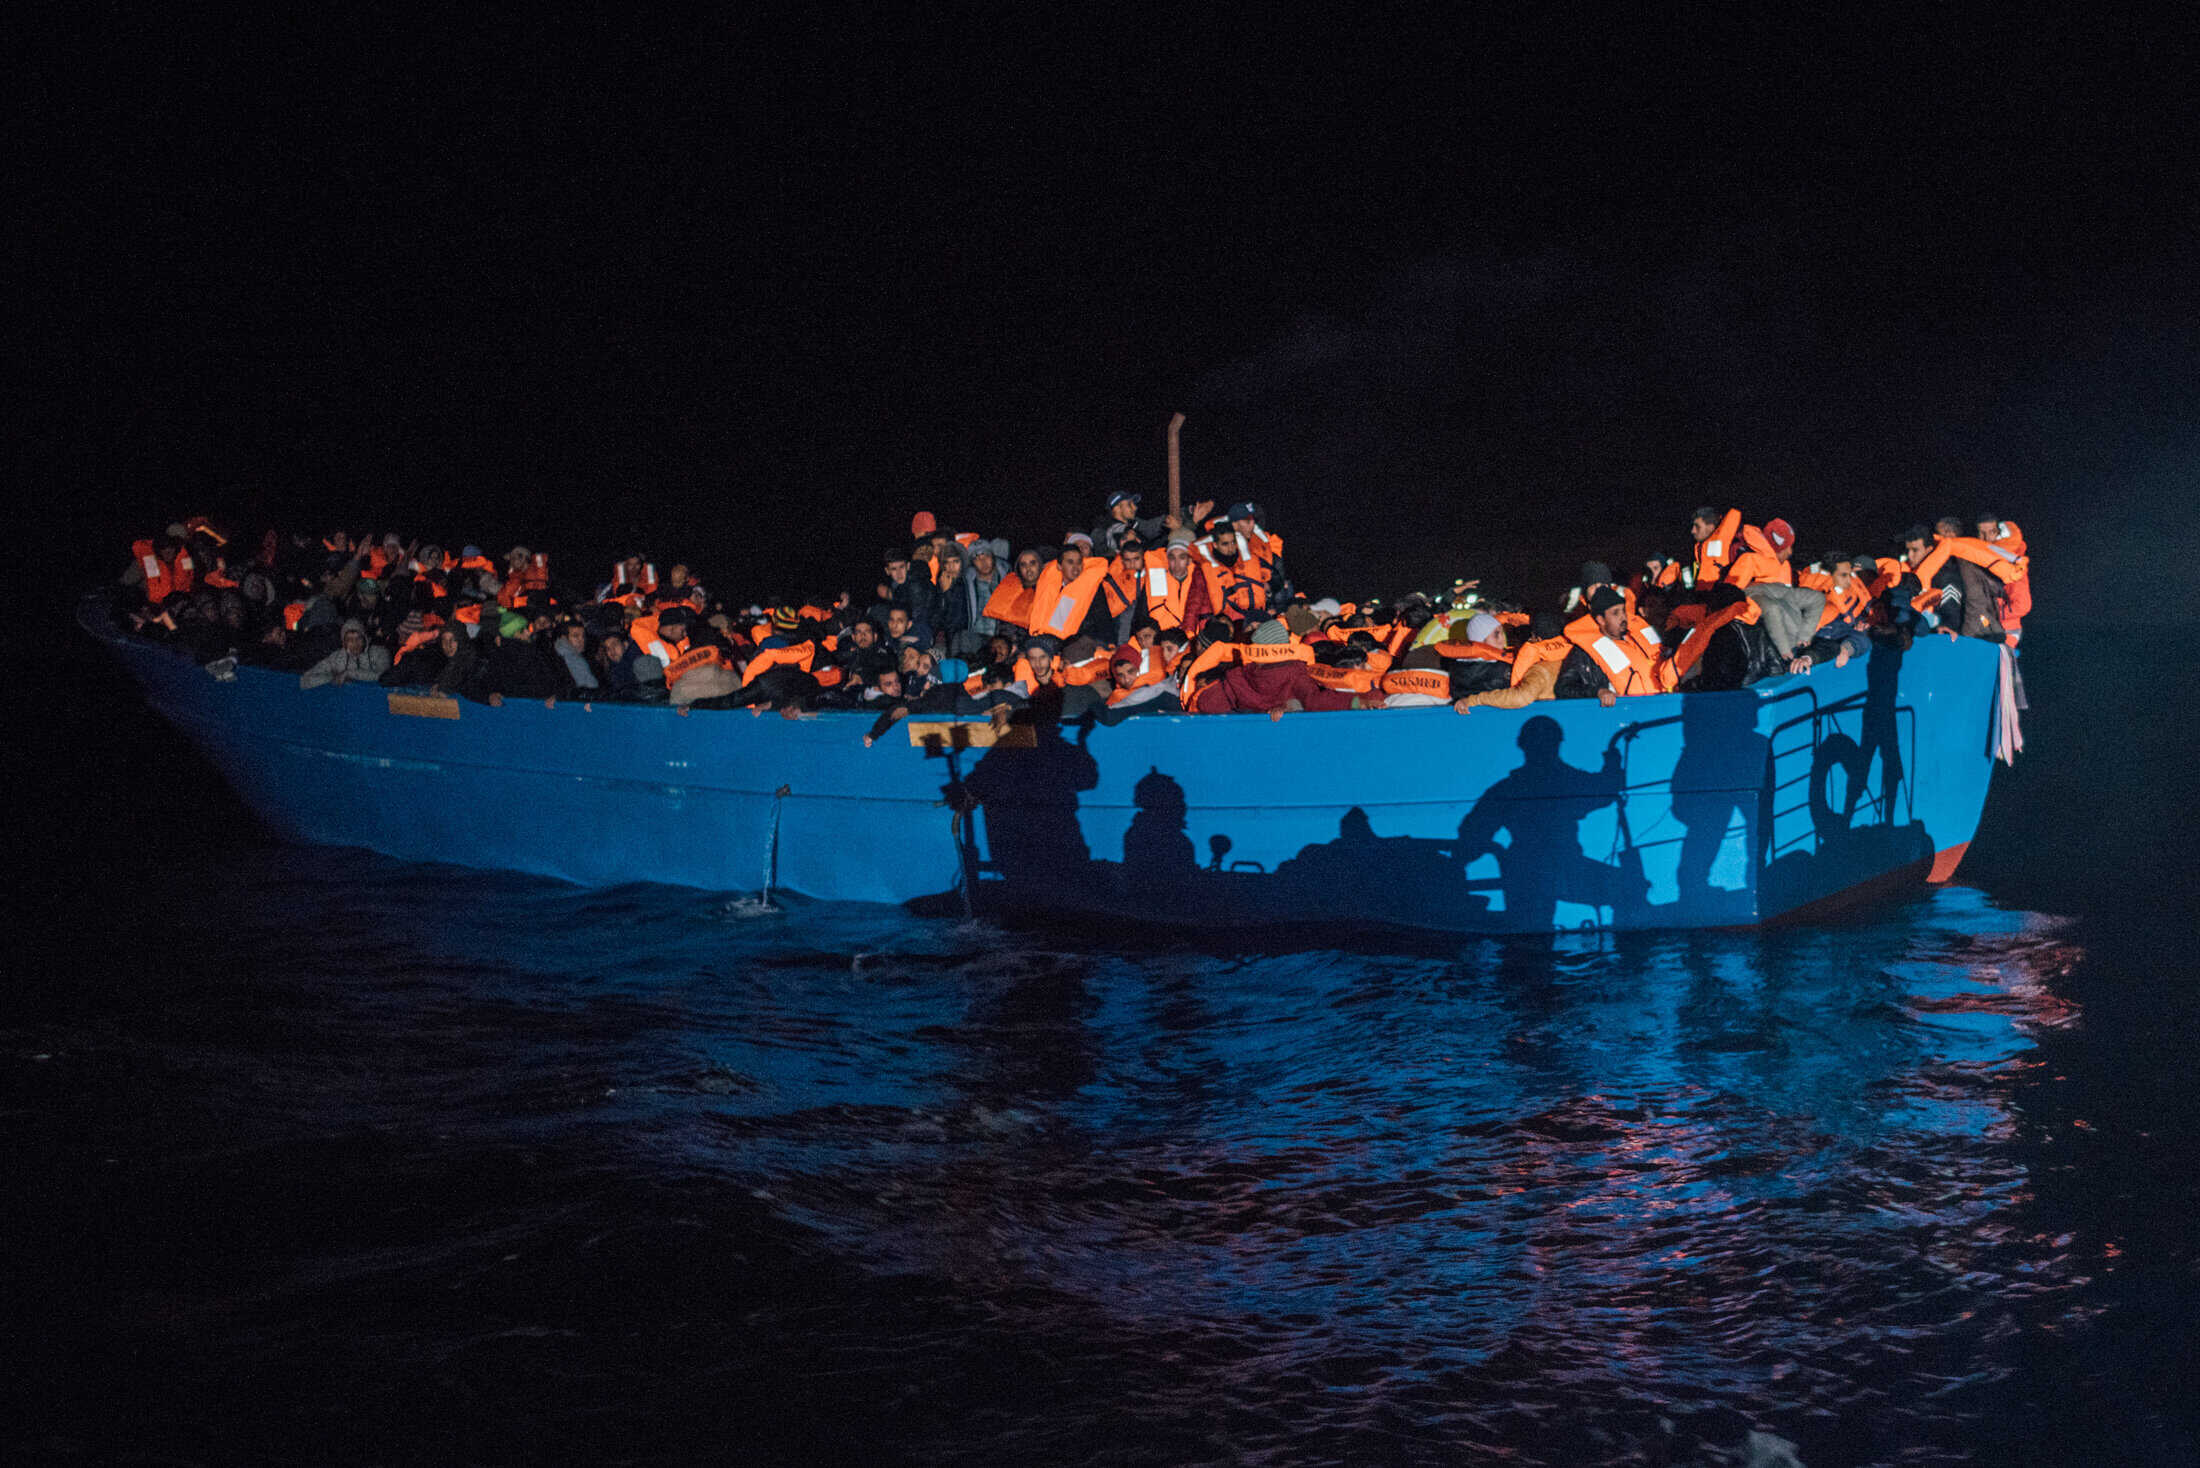 Salvataggio di 900 persone da 3 imbarcazioni con una operazione di soccorso durata 12 ore